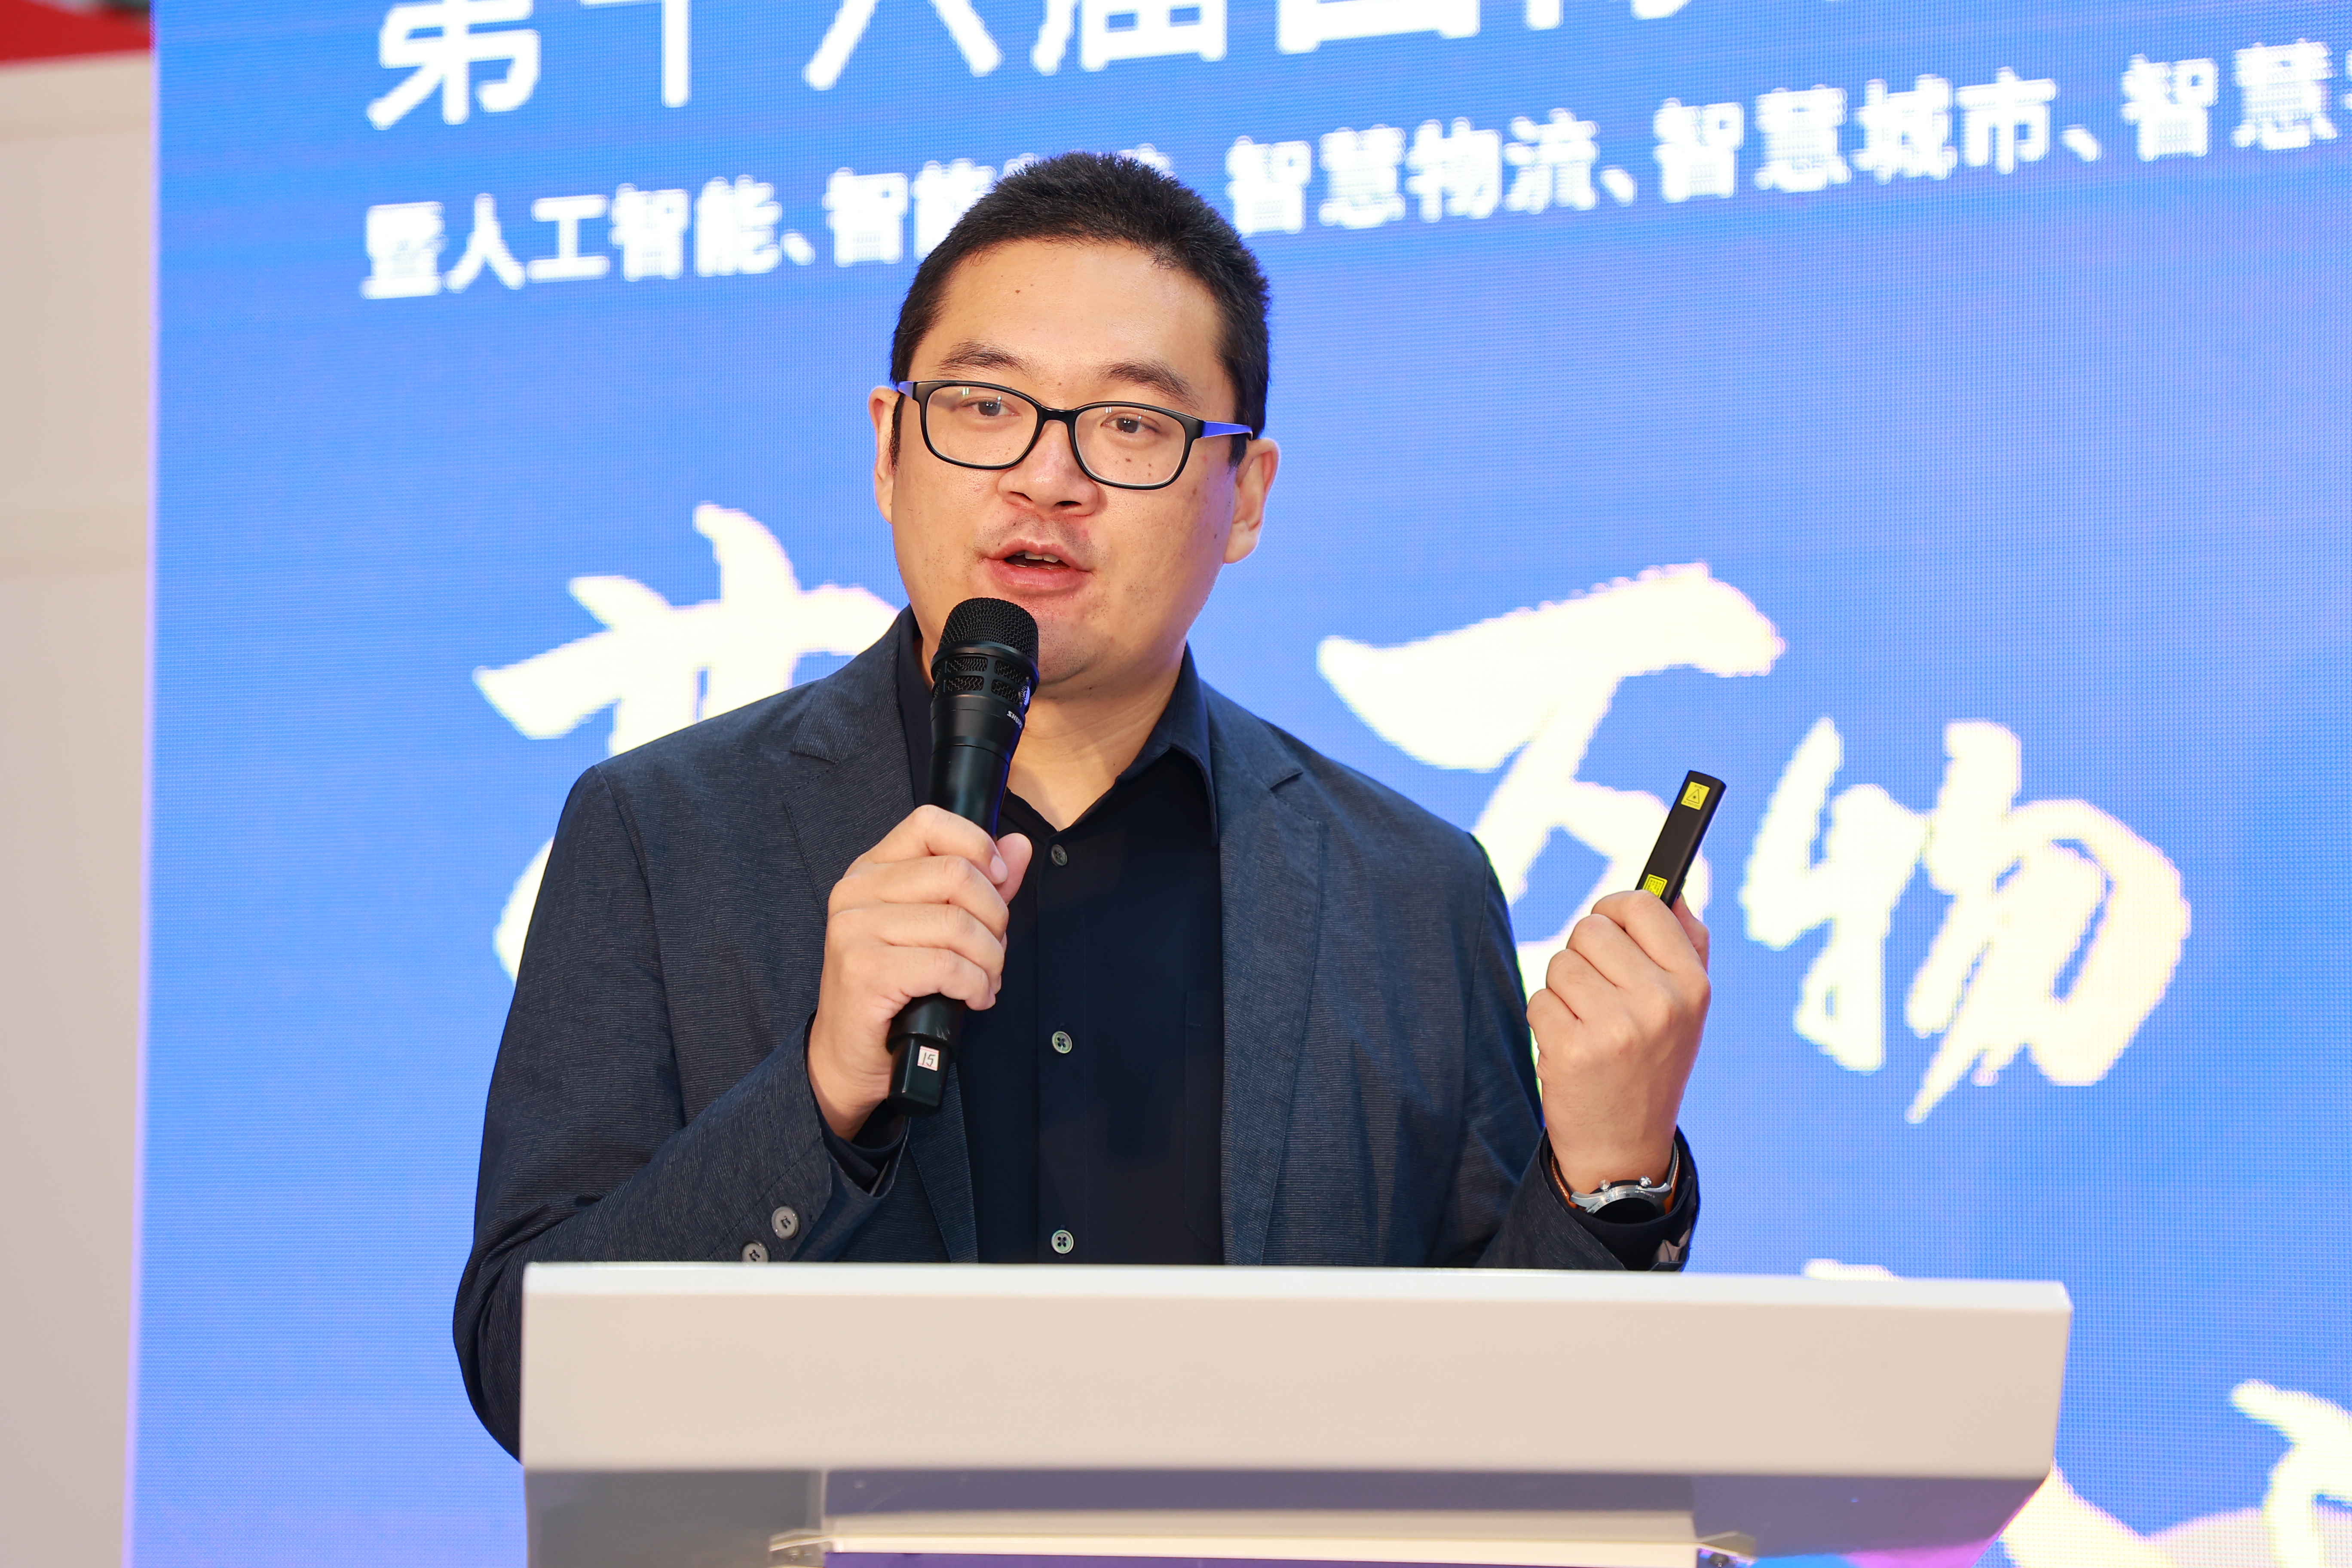 【论坛】IOTE 2021 深圳国际智慧零售创新应用高峰论坛 